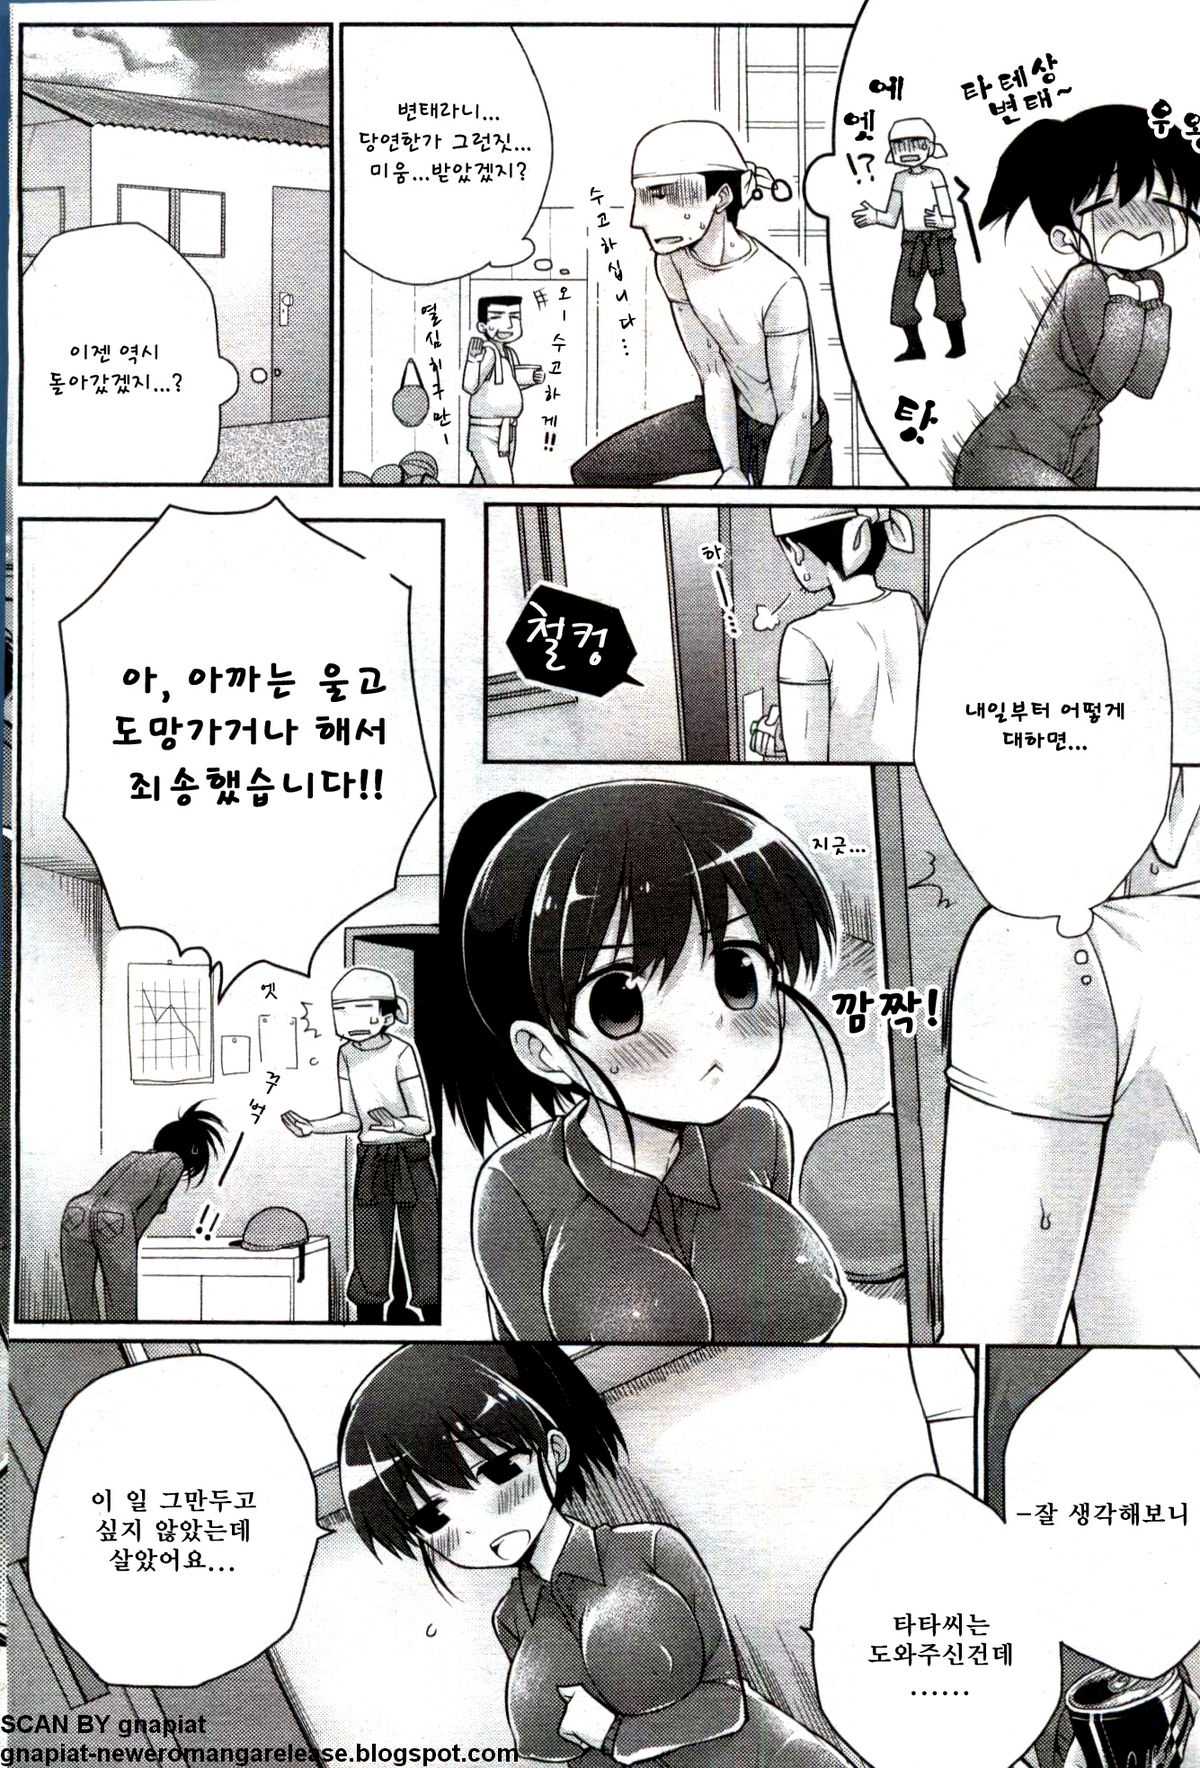 [Giuniu] Play Offline (Canopri Comic 2012-07 Vol. 21) (korean) 